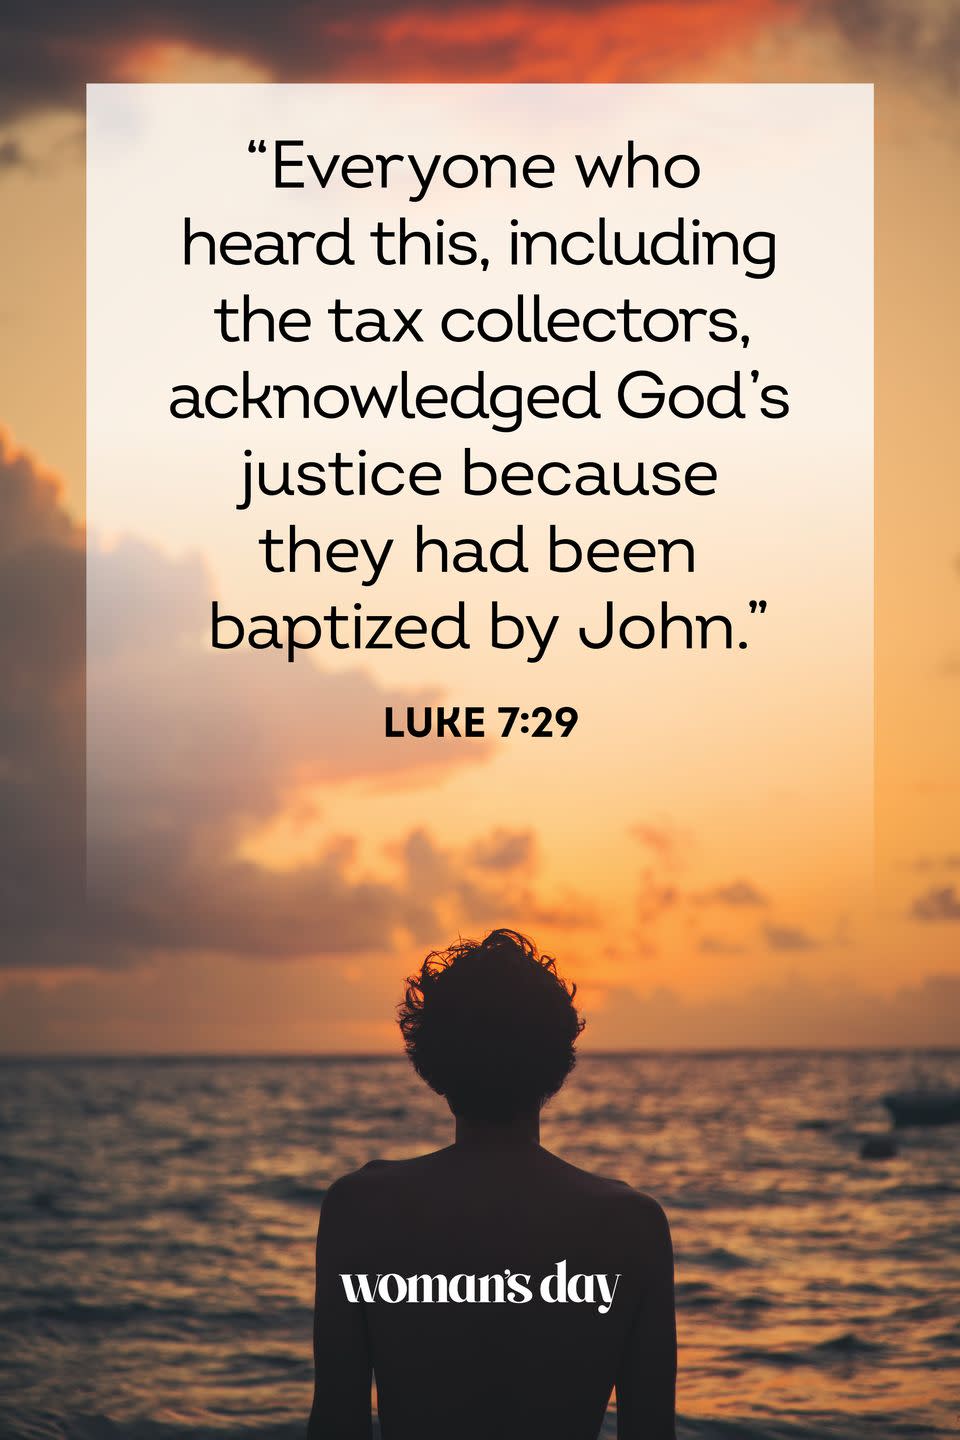 9) Luke 7:29